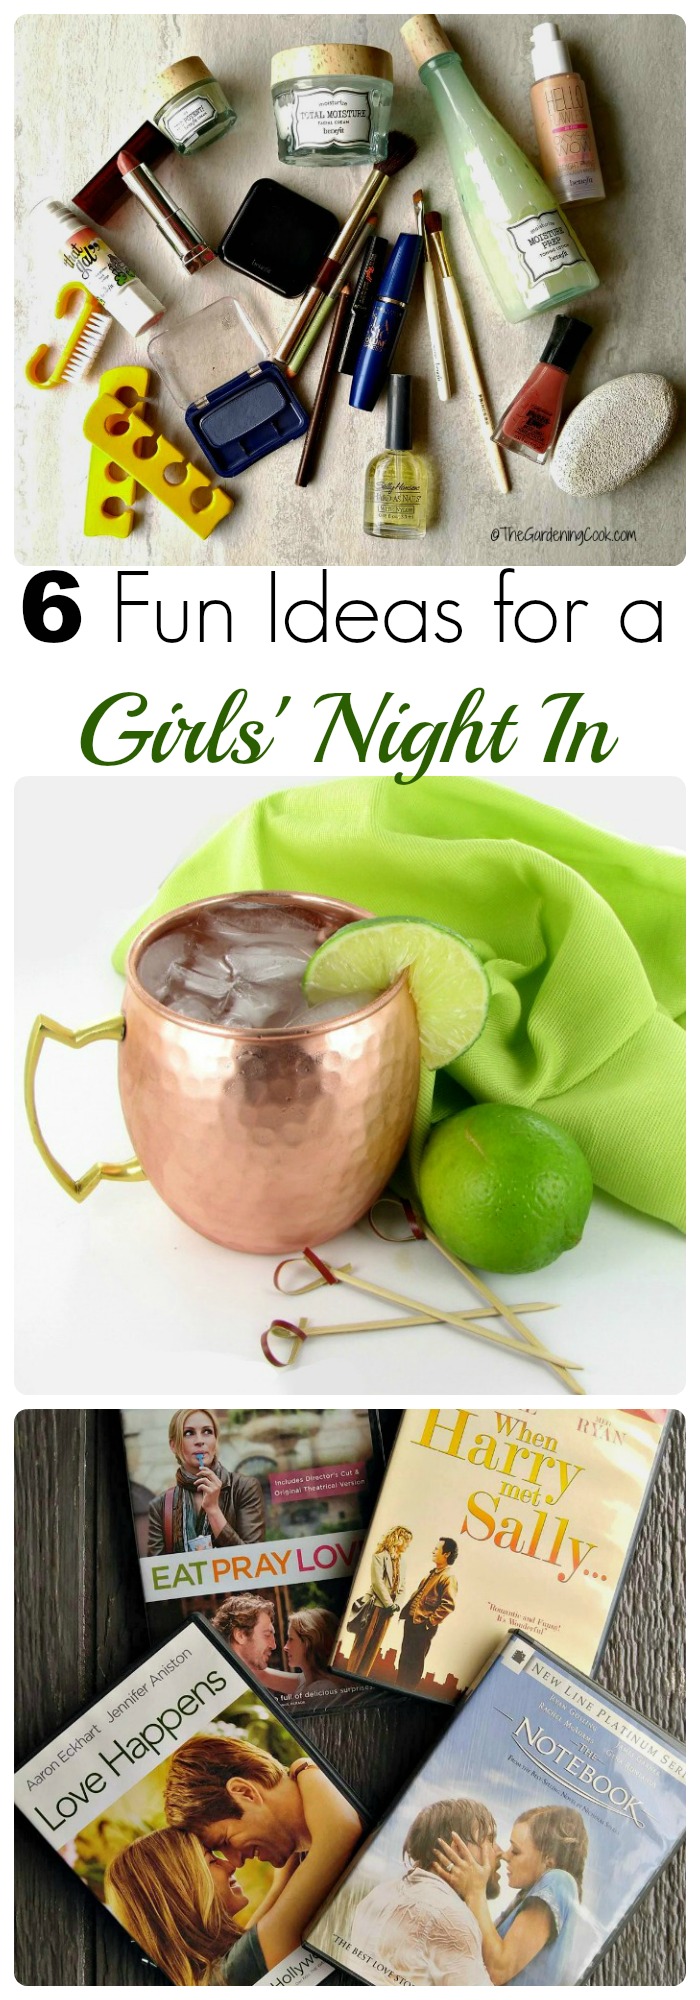 Girls' Night In – 6 ເຄັດ​ລັບ​ສໍາ​ລັບ​ຕອນ​ແລງ​ມ່ວນ​ຊື່ນ​ຢູ່​ເຮືອນ​